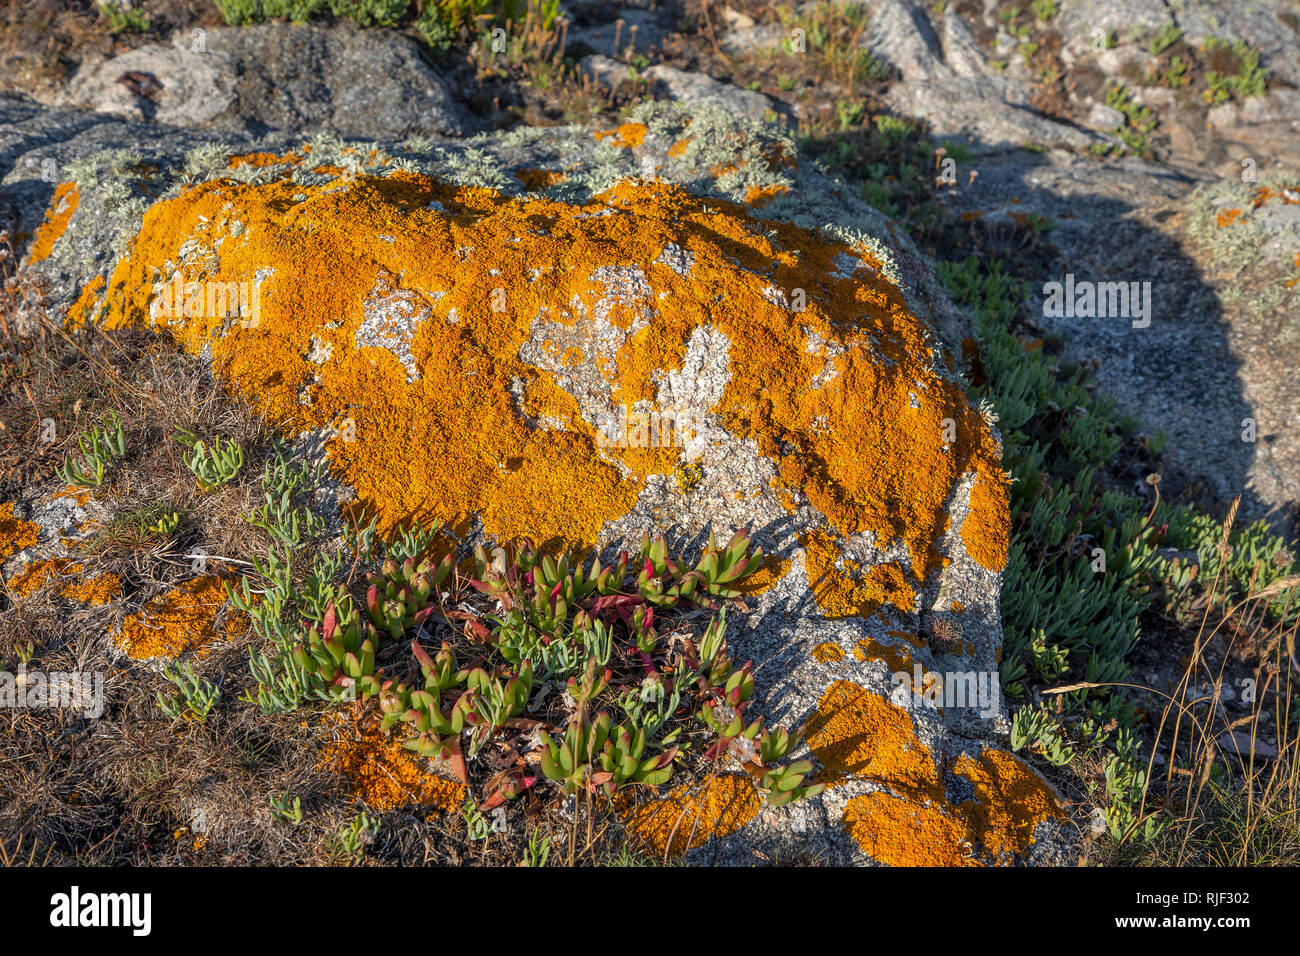 Lichen growing on rocks near Roselle Point on Alderney, channel islands. Stock Photo